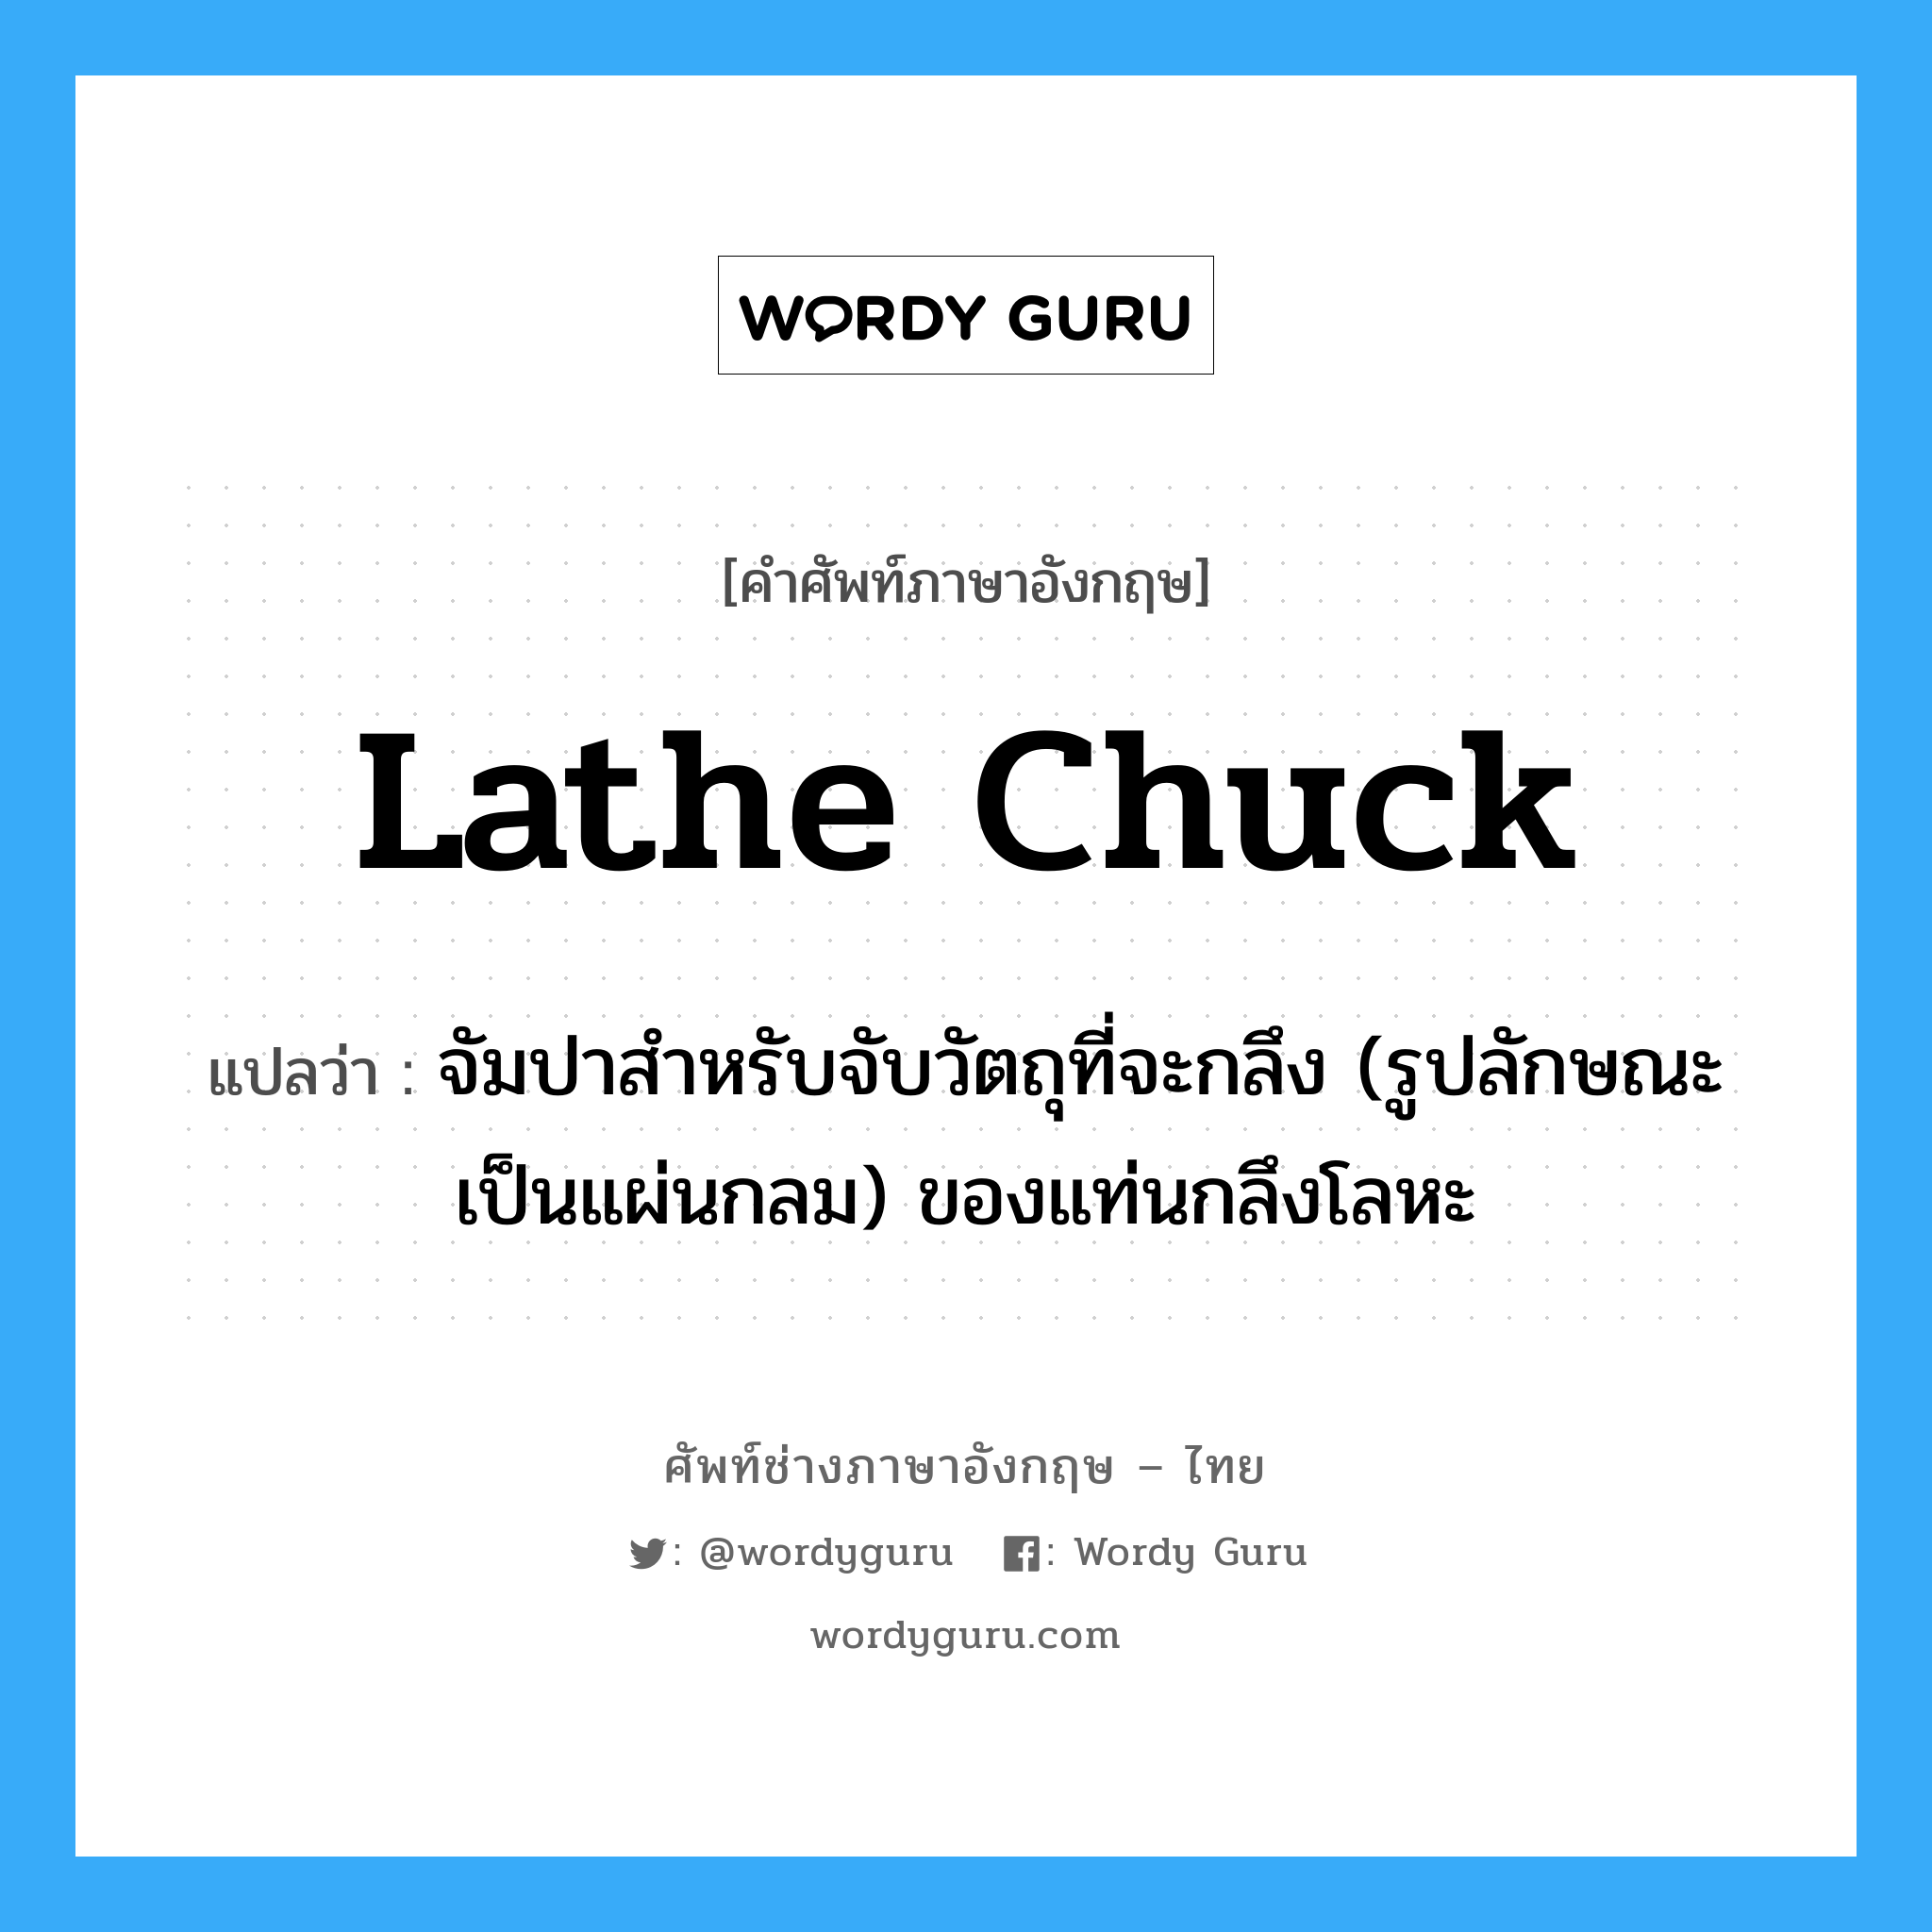 lathe chuck แปลว่า?, คำศัพท์ช่างภาษาอังกฤษ - ไทย lathe chuck คำศัพท์ภาษาอังกฤษ lathe chuck แปลว่า จัมปาสำหรับจับวัตถุที่จะกลึง (รูปลักษณะเป็นแผ่นกลม) ของแท่นกลึงโลหะ